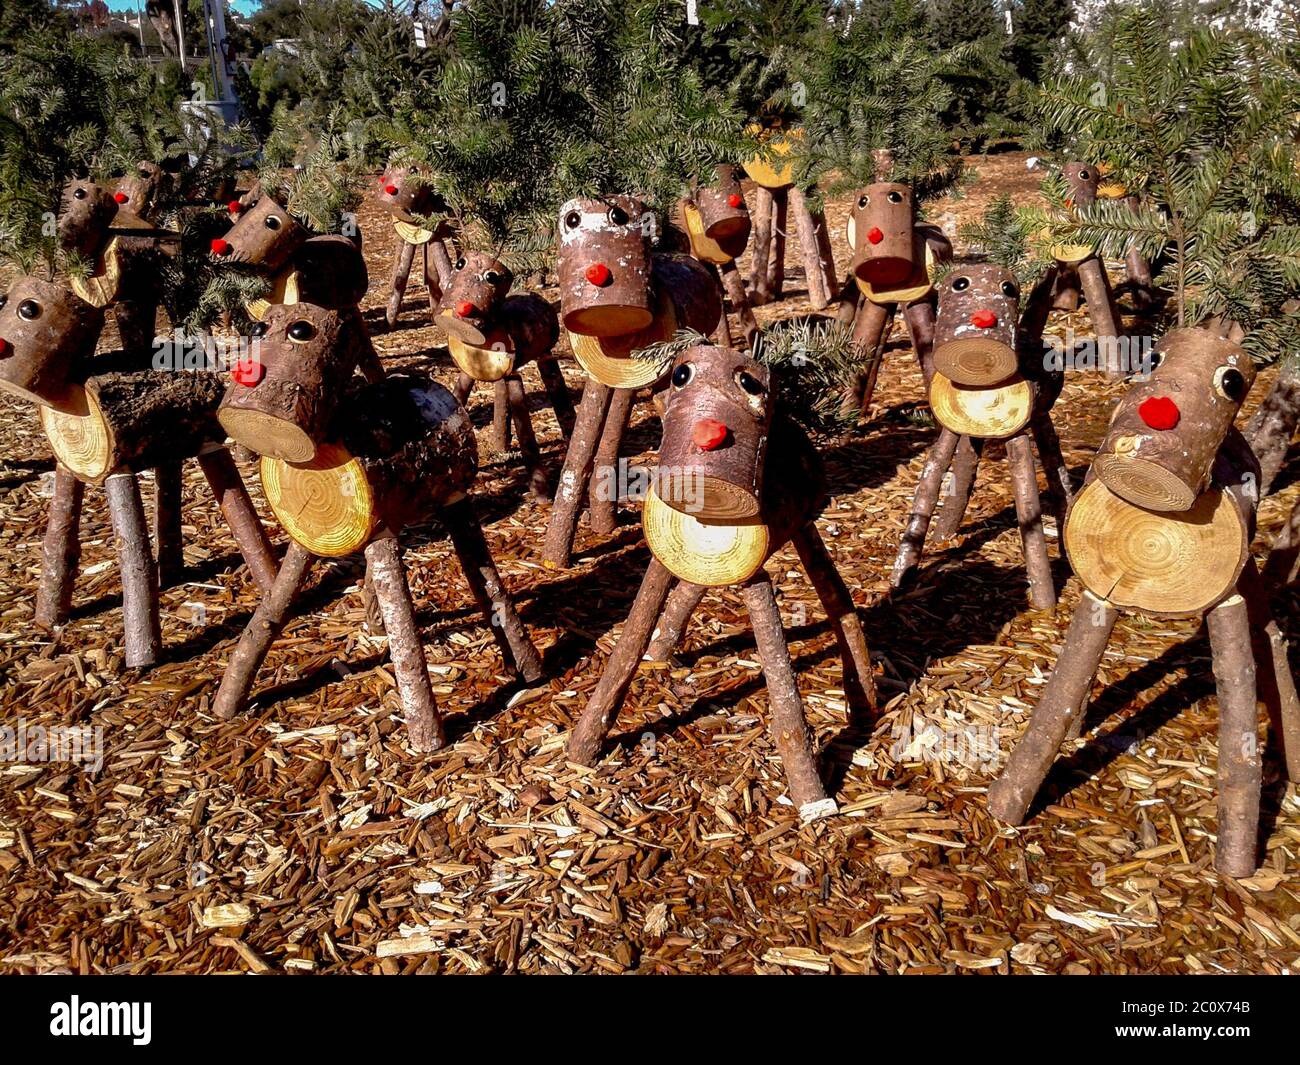 Holzmodelle von Rudolph dem Rotnasenrentier aus gesägten Baumstämmen sind zur Weihnachtszeit in Laguna Niguel, CA, zum Verkauf. Stockfoto